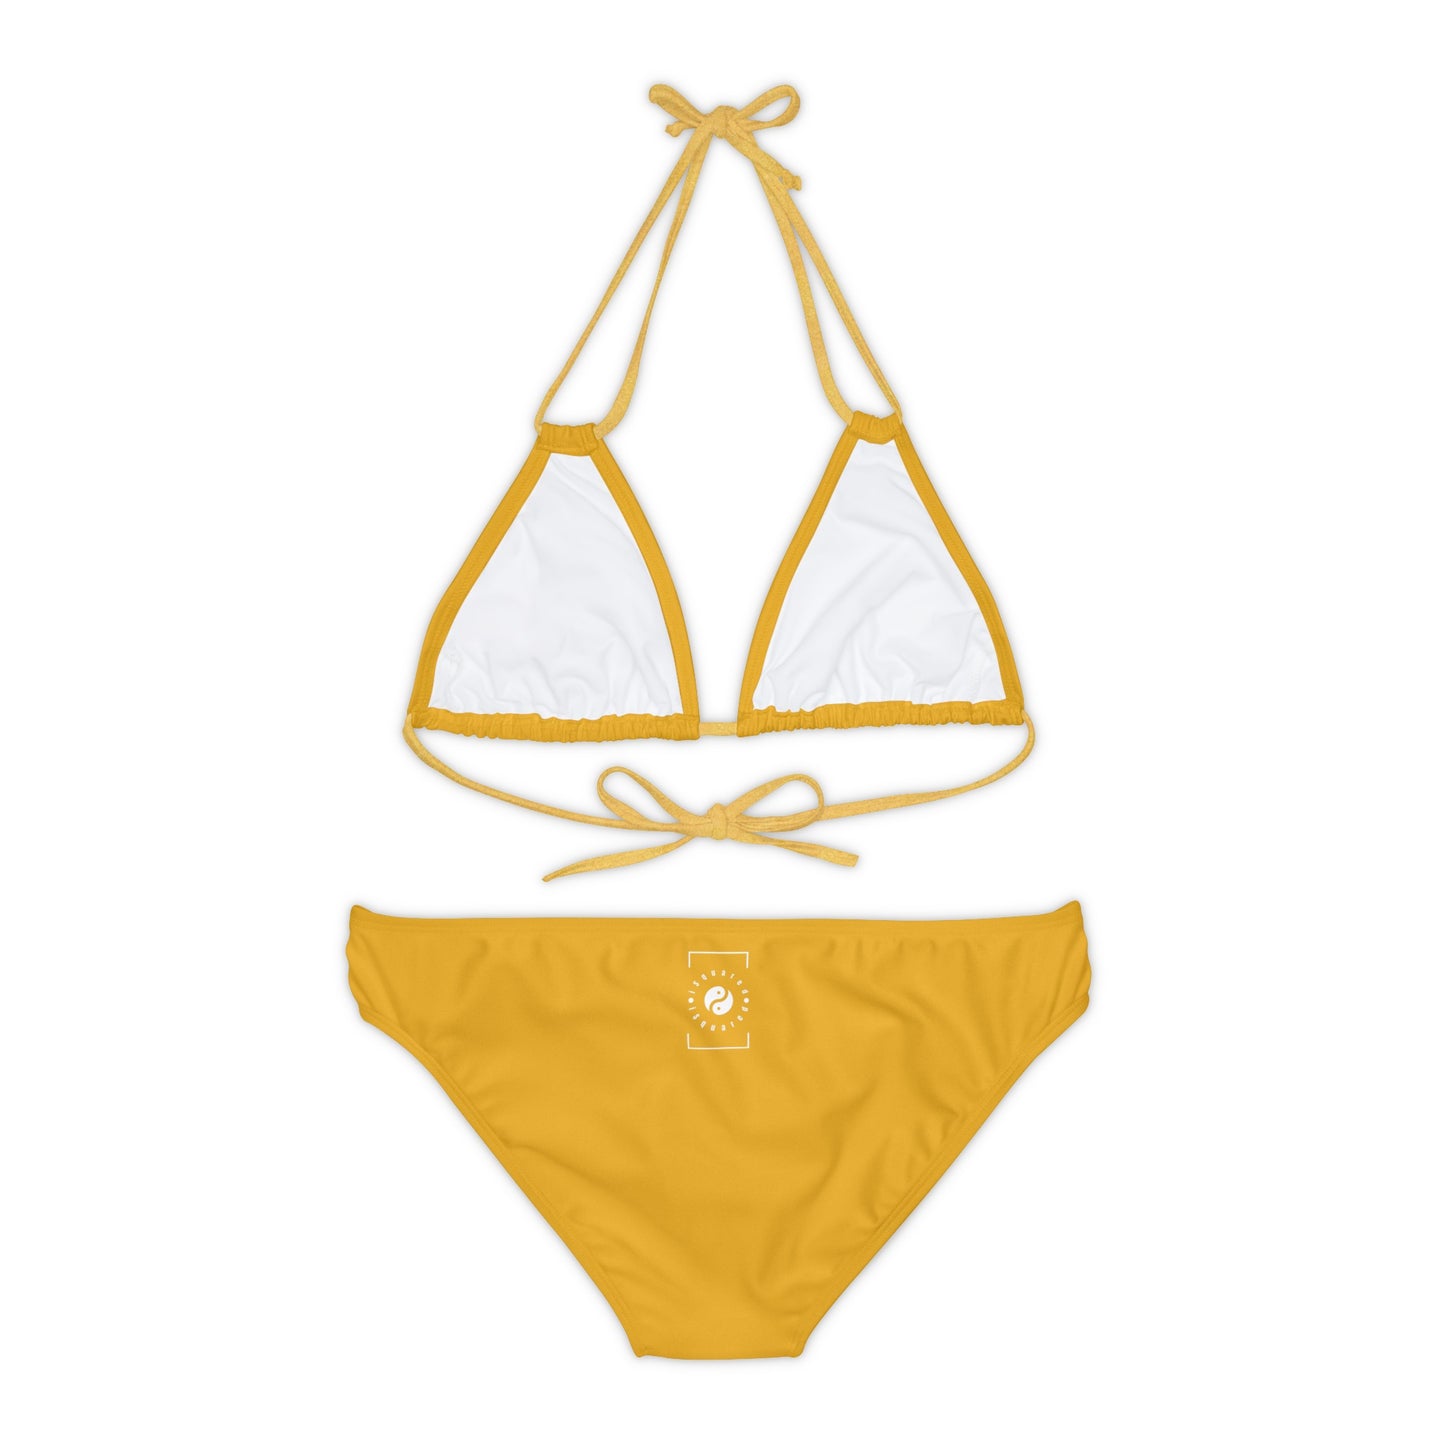 DAA520 Goldenrod - Lace-up Bikini Set